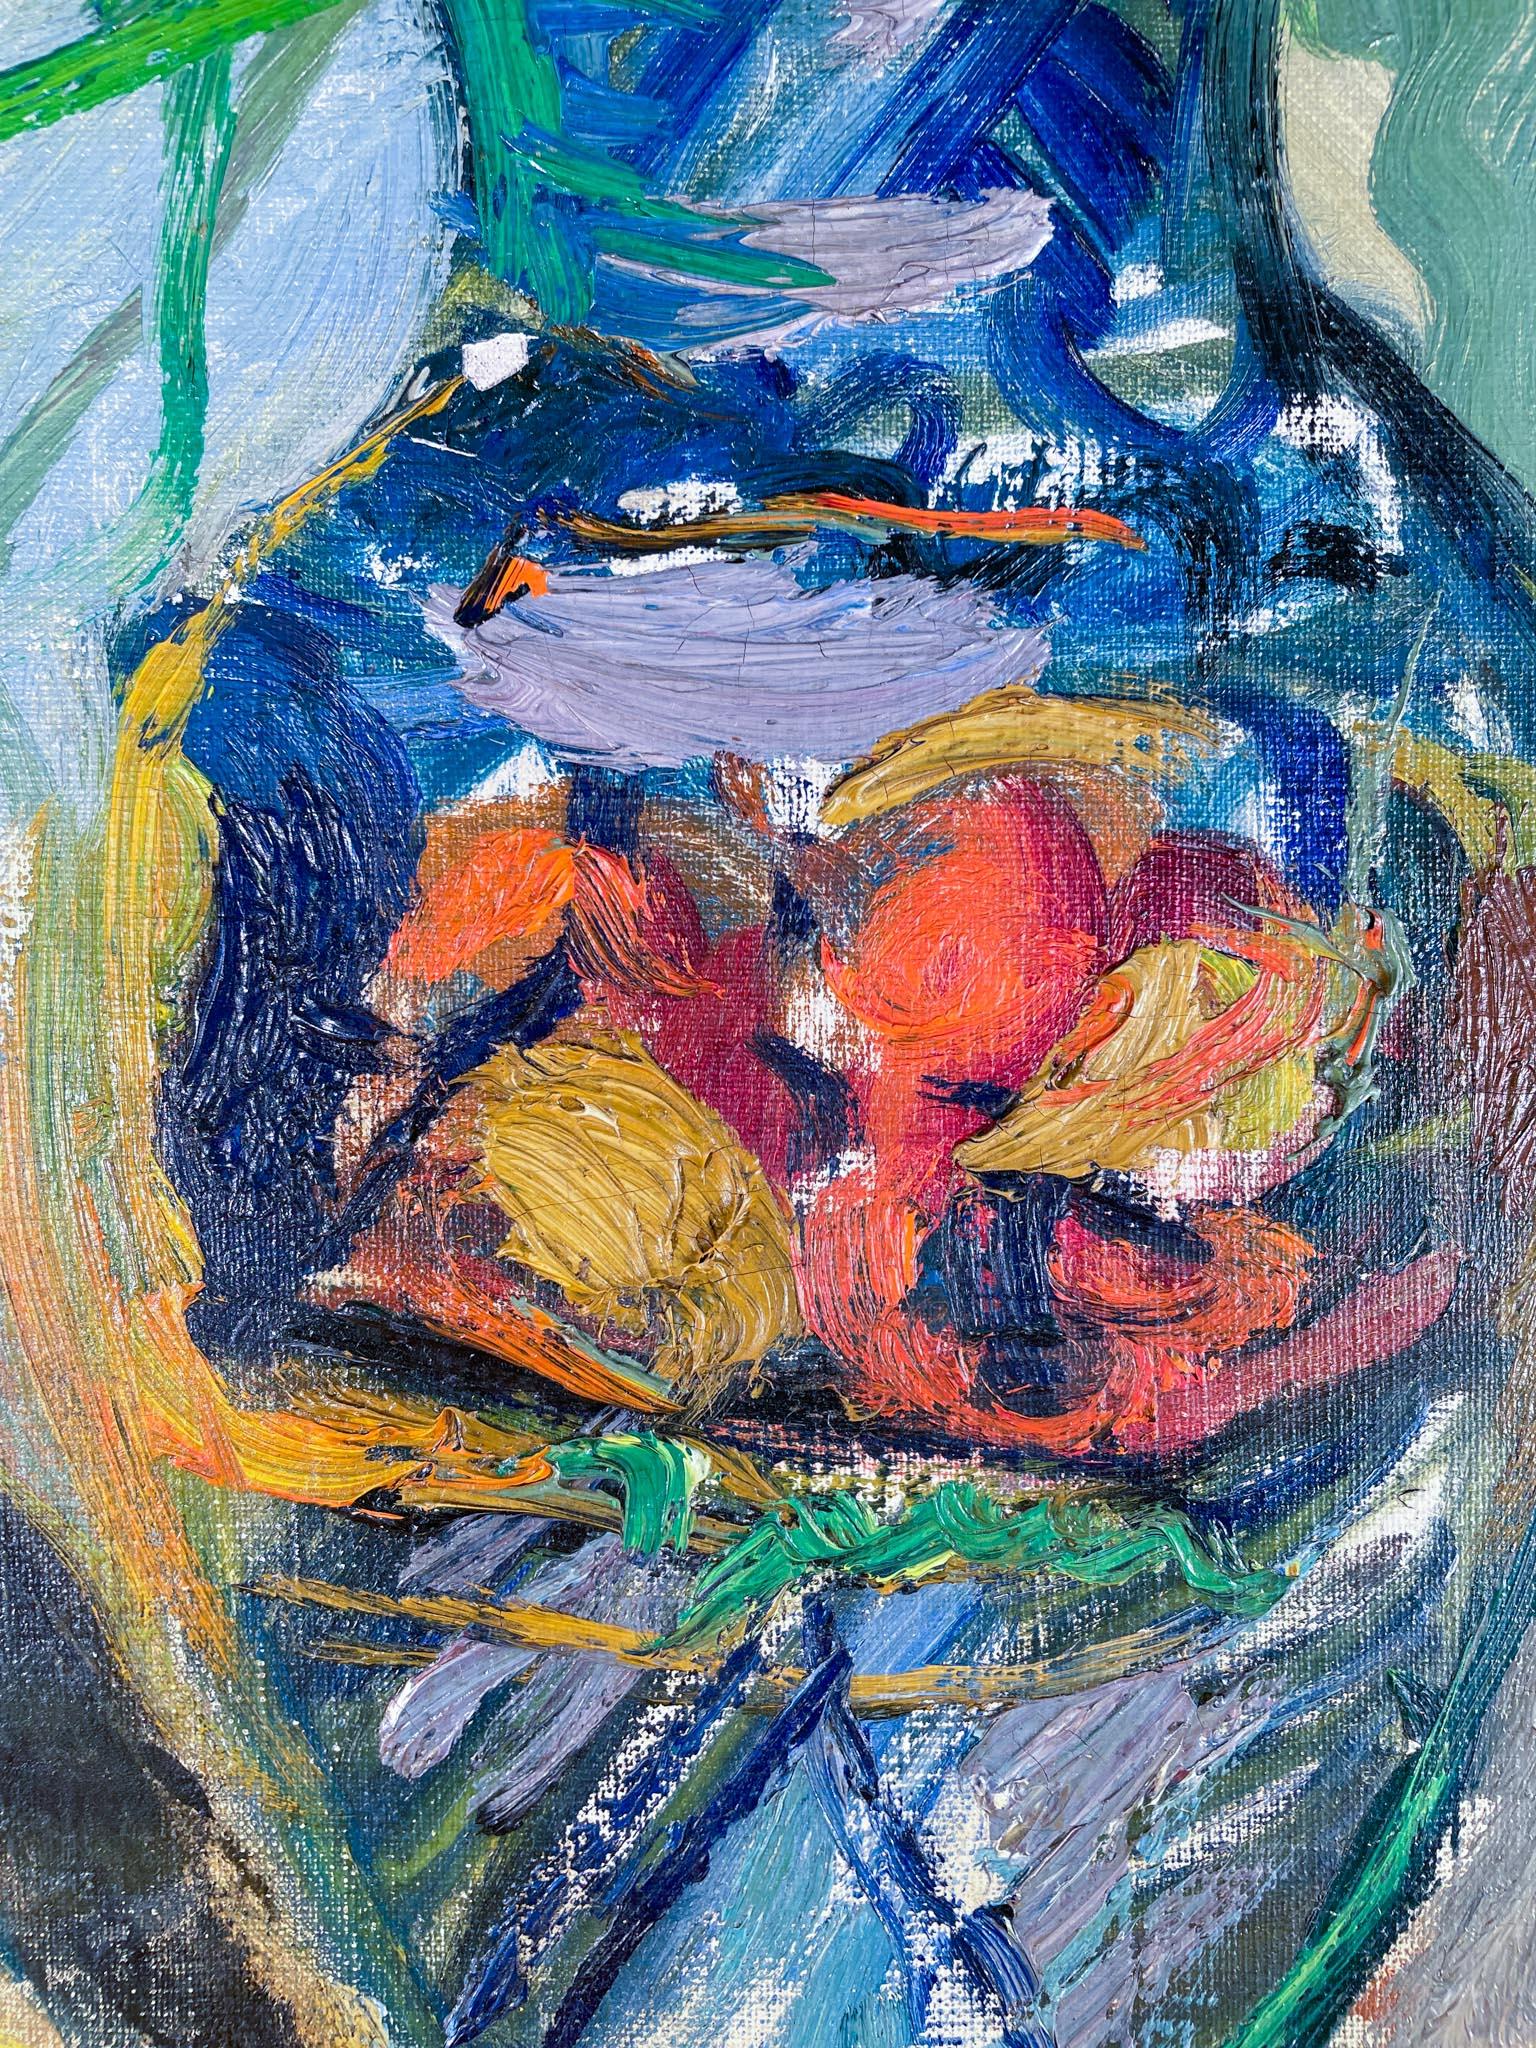 Bol d'iris, 1935, par Emmanuel Mané-Katz (1894-1962)
Huile sur toile
60,96 x 50,8 cm (24 x 20 pouces) non encadré
33 ½ x 29 ½ pouces encadré (85.09 x 74.93 cm)
Signé en bas à droite

Description :
Emmanuel Mané-Katz était un moderniste de premier